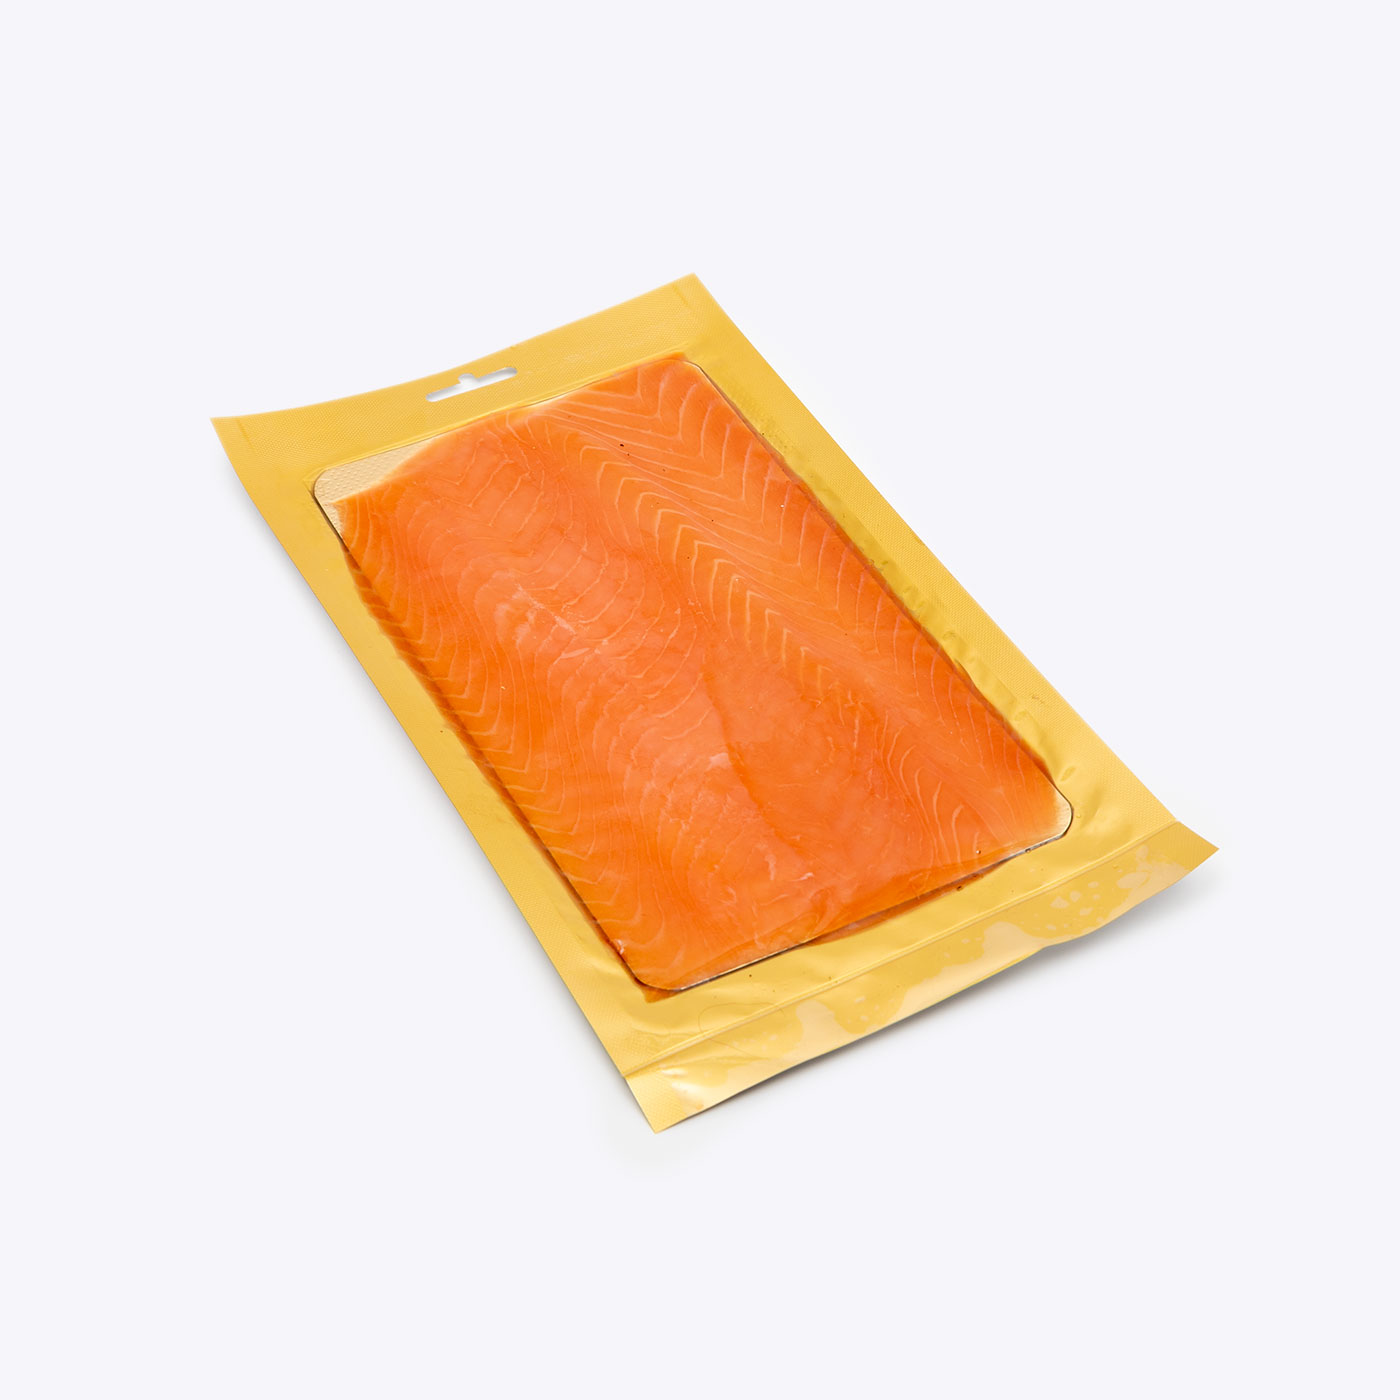 Smoked Salmon 100g